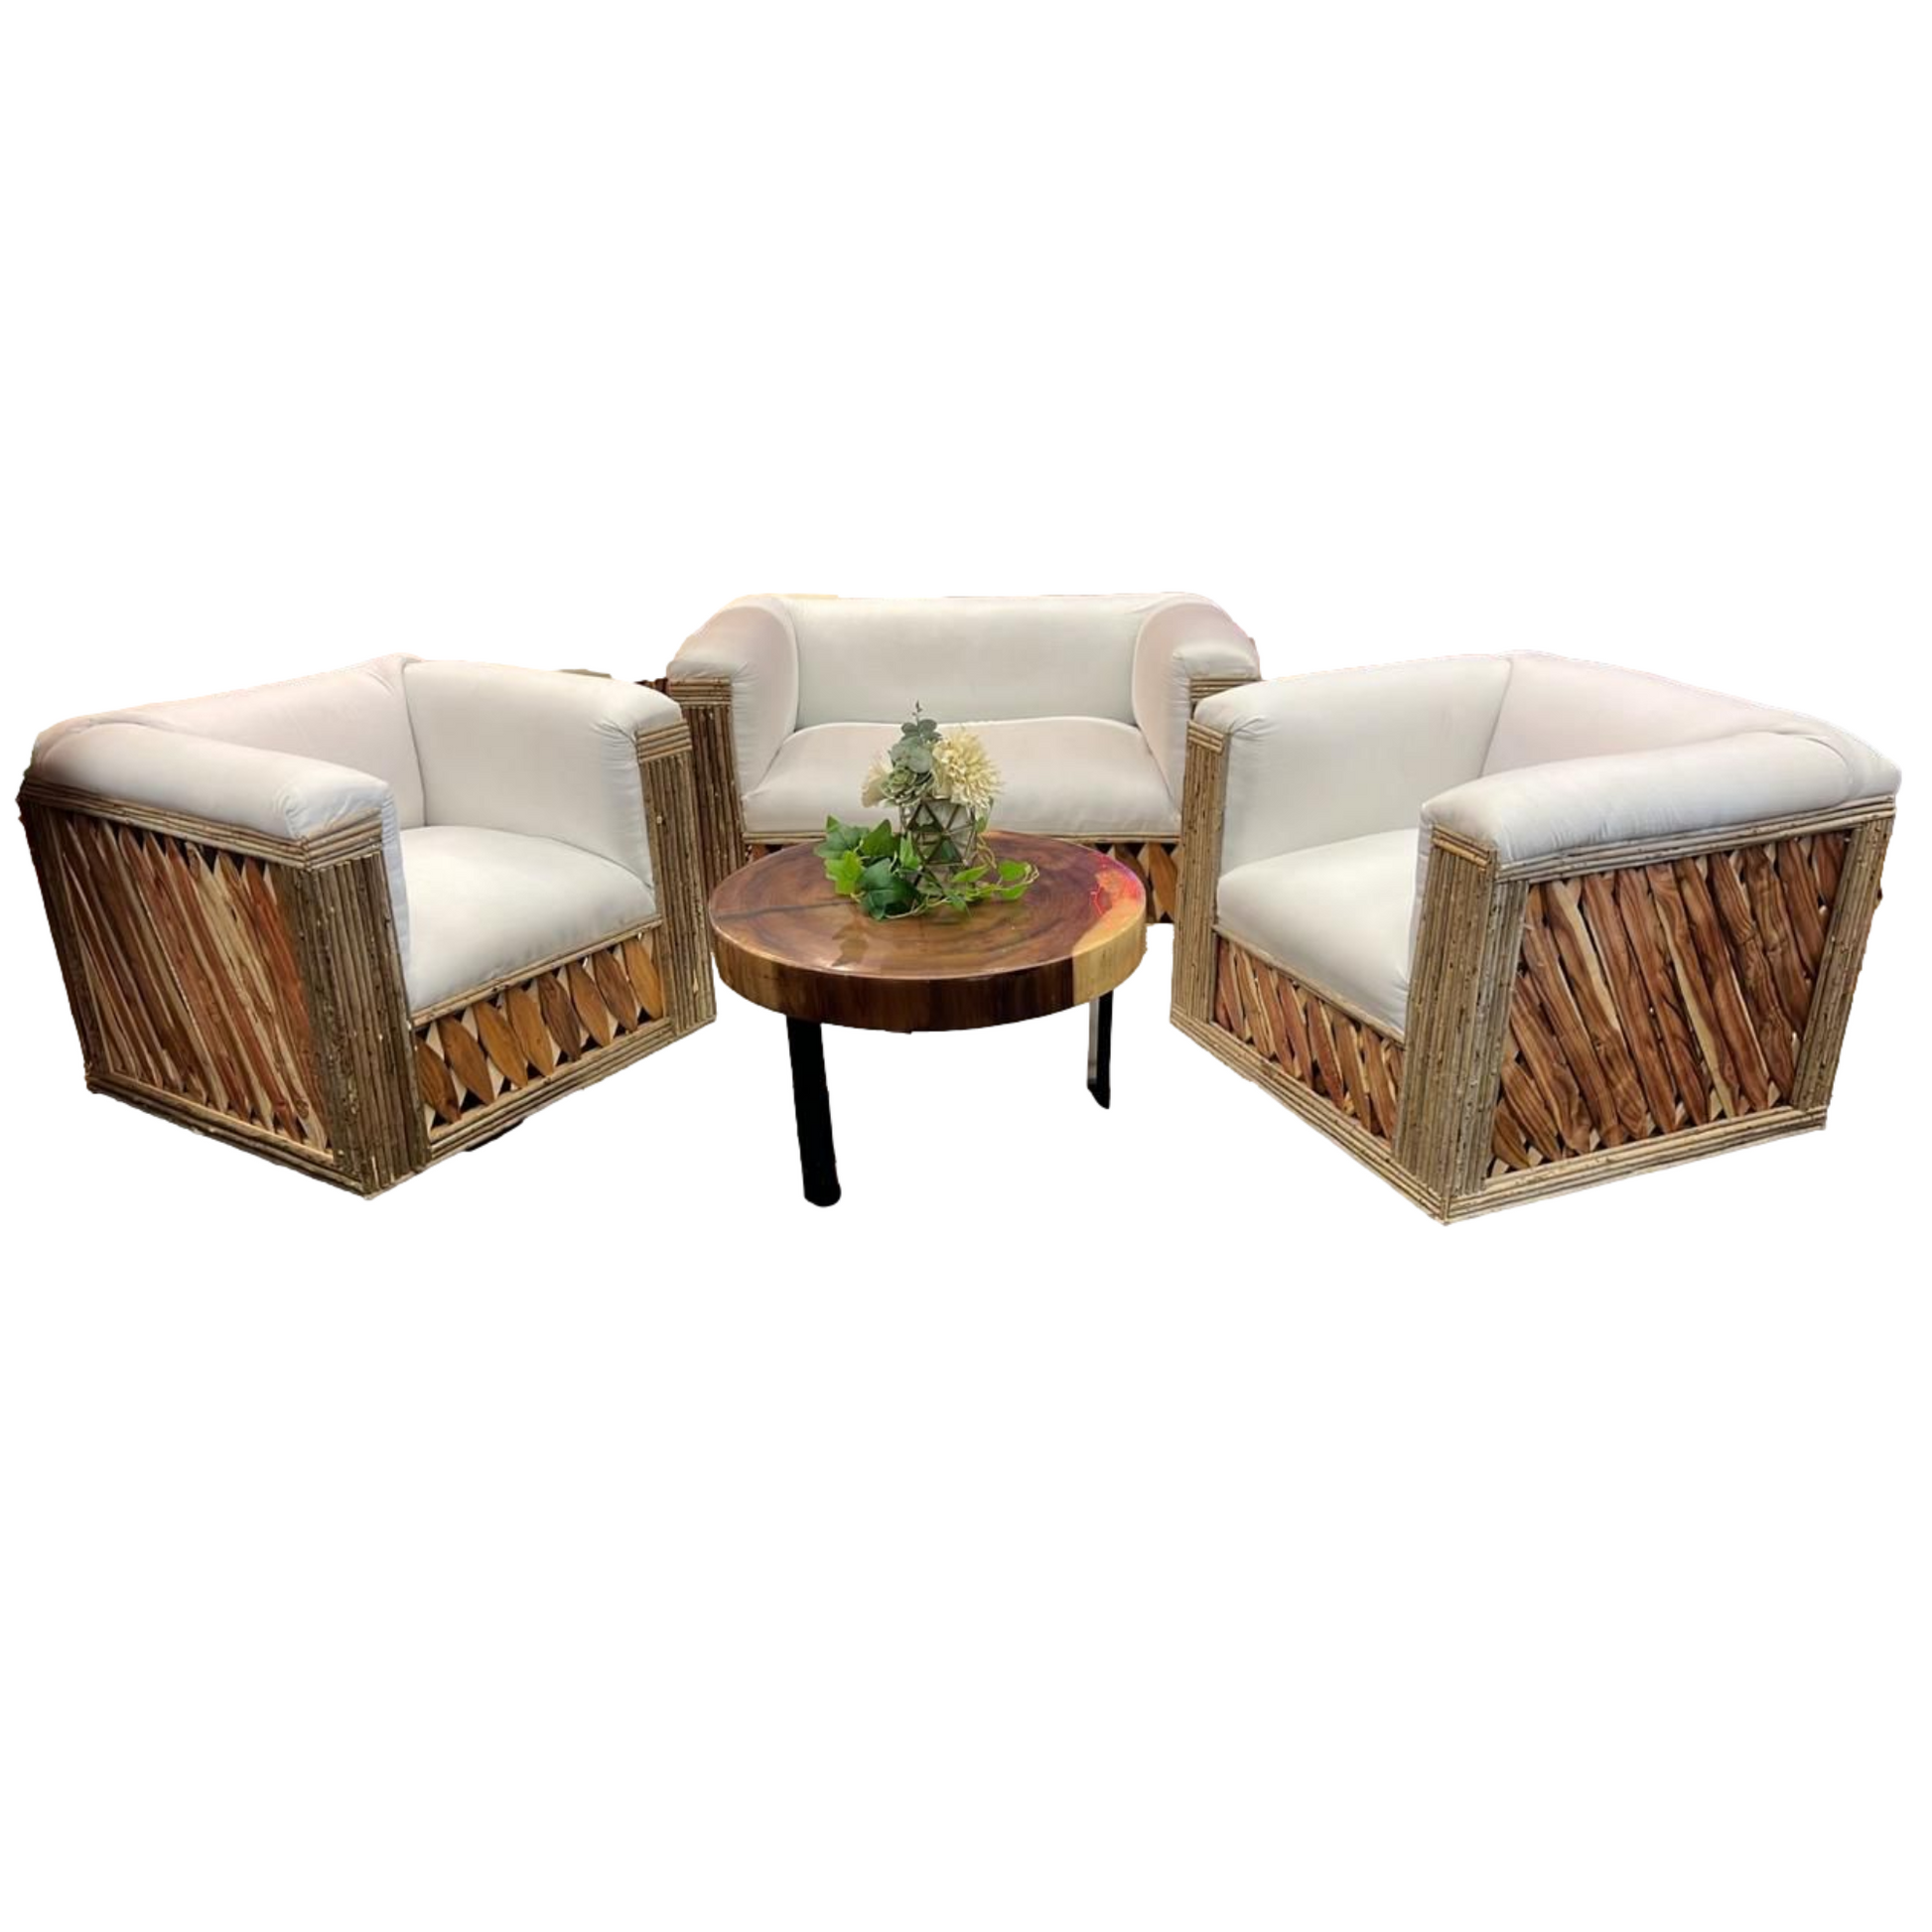 Mexican Handmade Cushioned Equipal Cancun Chairs- MeXican Artisan Fashion & Design